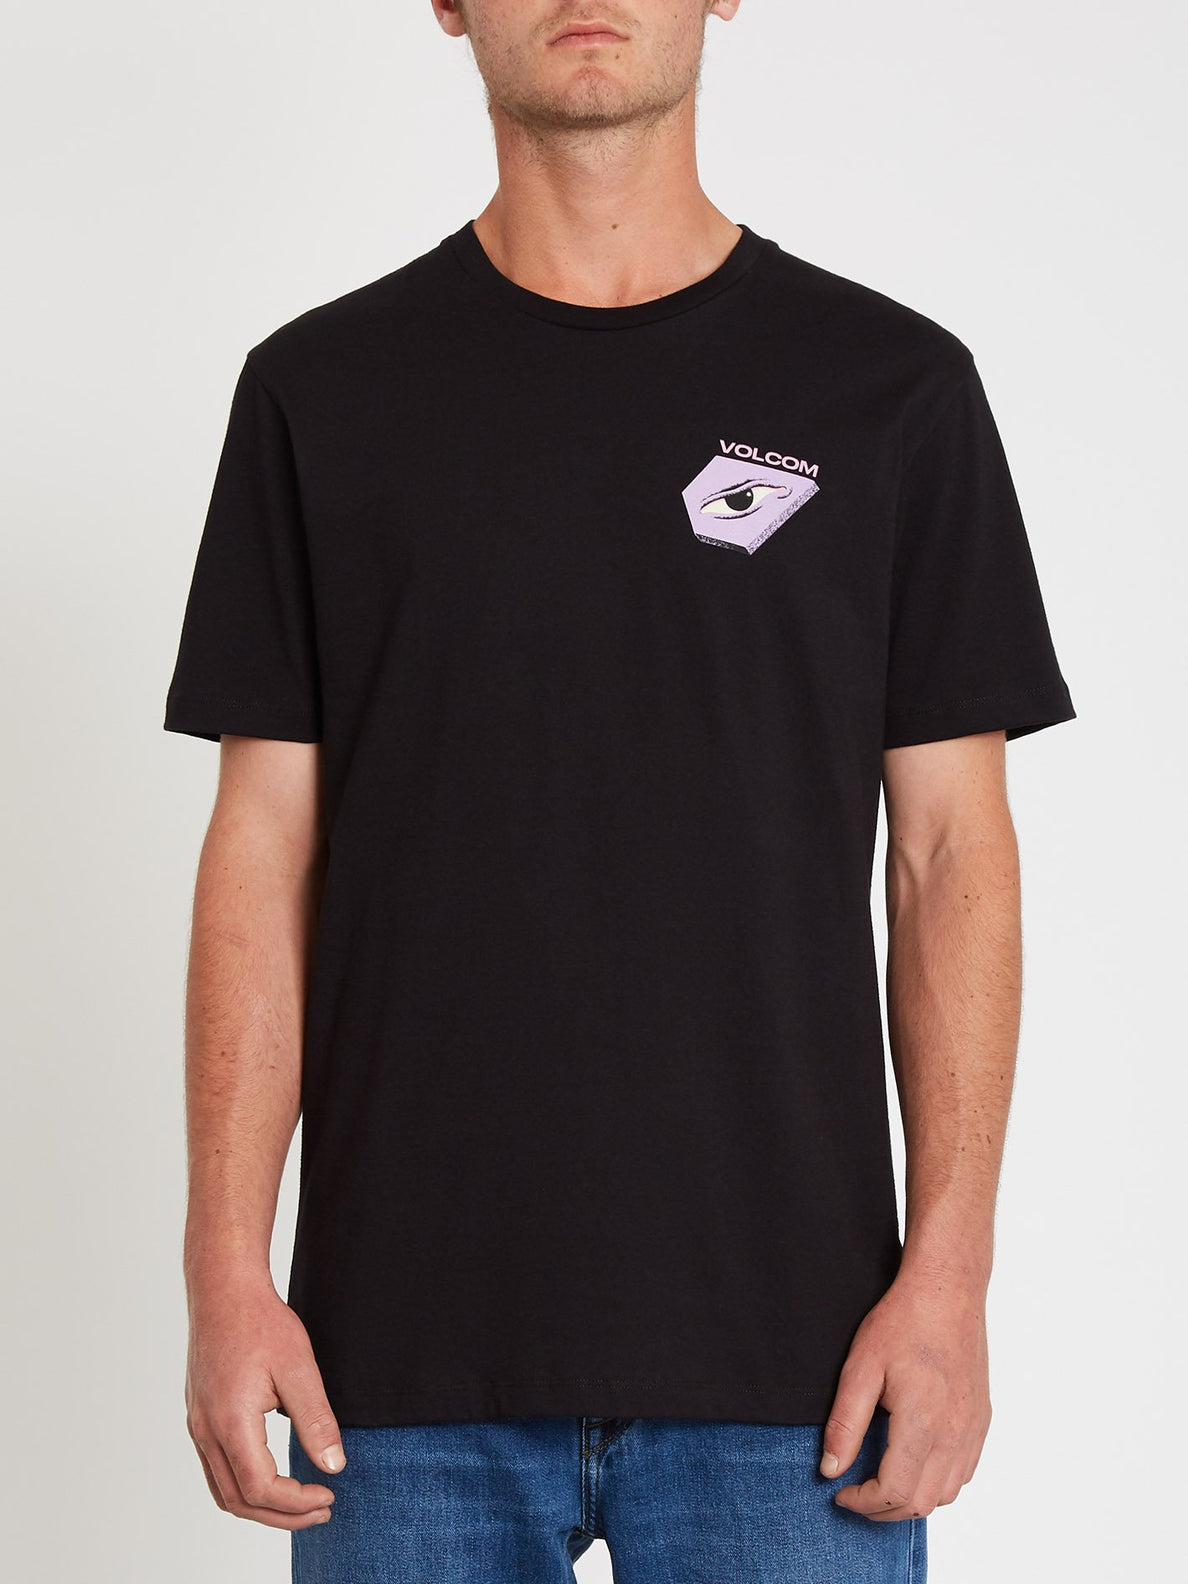 M. Loeffler 2 T-shirt - Black (A5212115_BLK) [11]